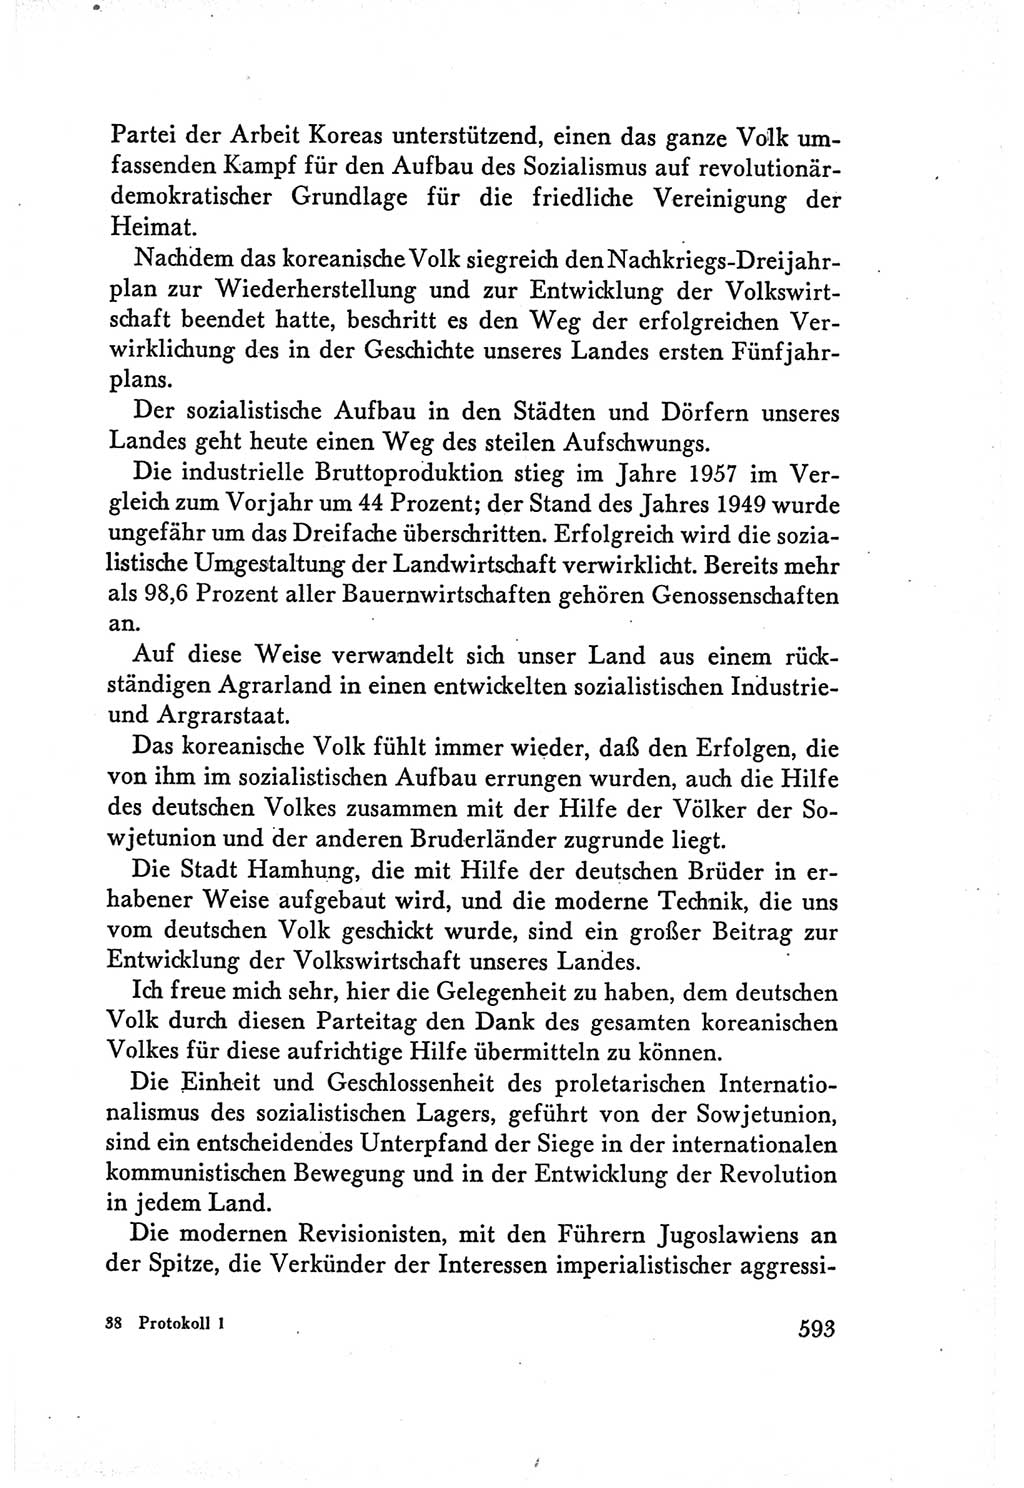 Protokoll der Verhandlungen des Ⅴ. Parteitages der Sozialistischen Einheitspartei Deutschlands (SED) [Deutsche Demokratische Republik (DDR)] 1958, Seite 593